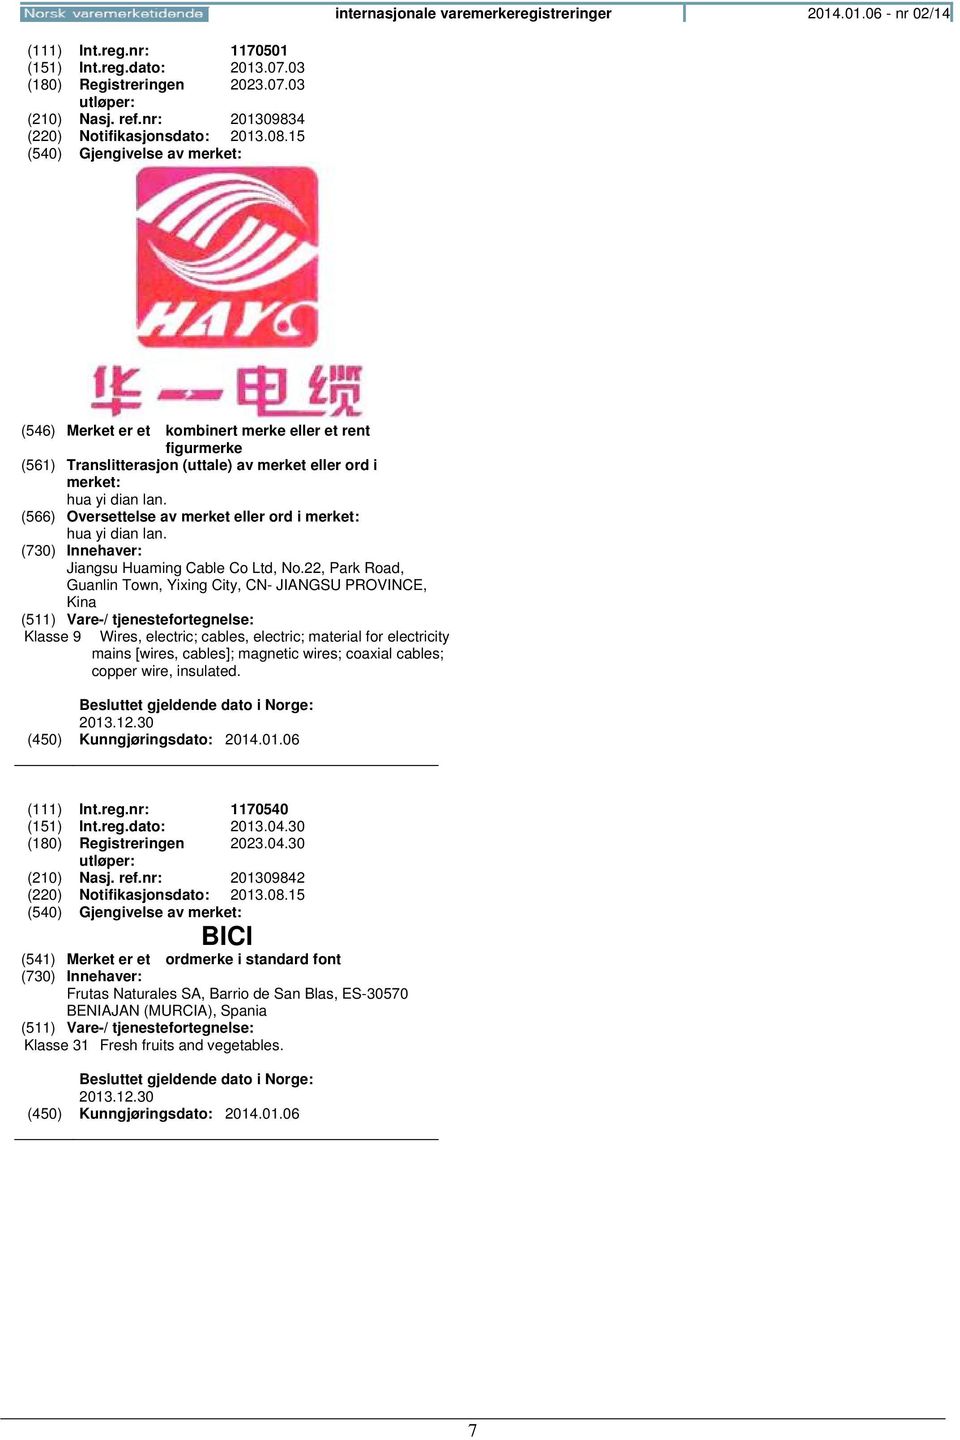 (566) Oversettelse av merket eller ord i merket: hua yi dian lan. Jiangsu Huaming Cable Co Ltd, No.